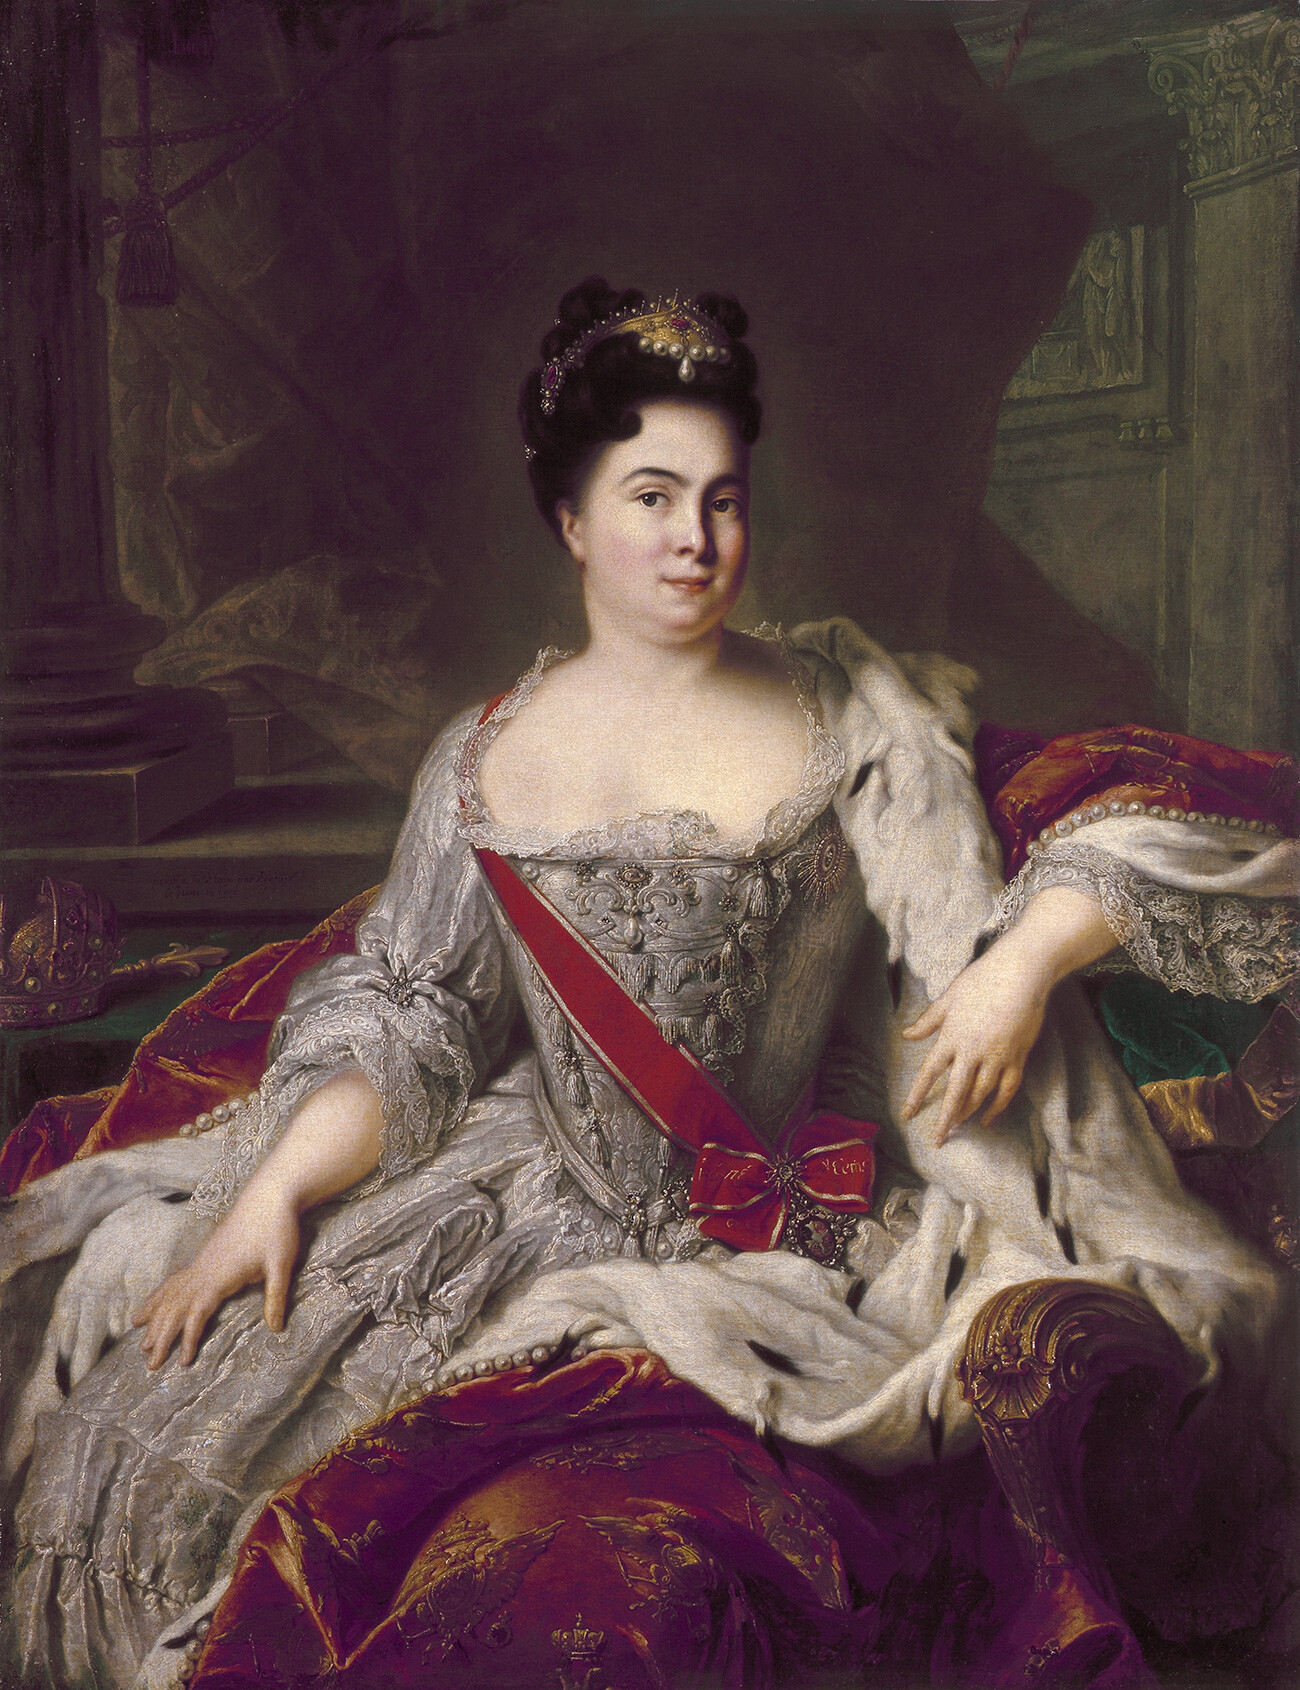 Caterina I di Russia, moglie di Pietro il Grande e imperatrice di Russia dopo la morte di lui nel 1725

